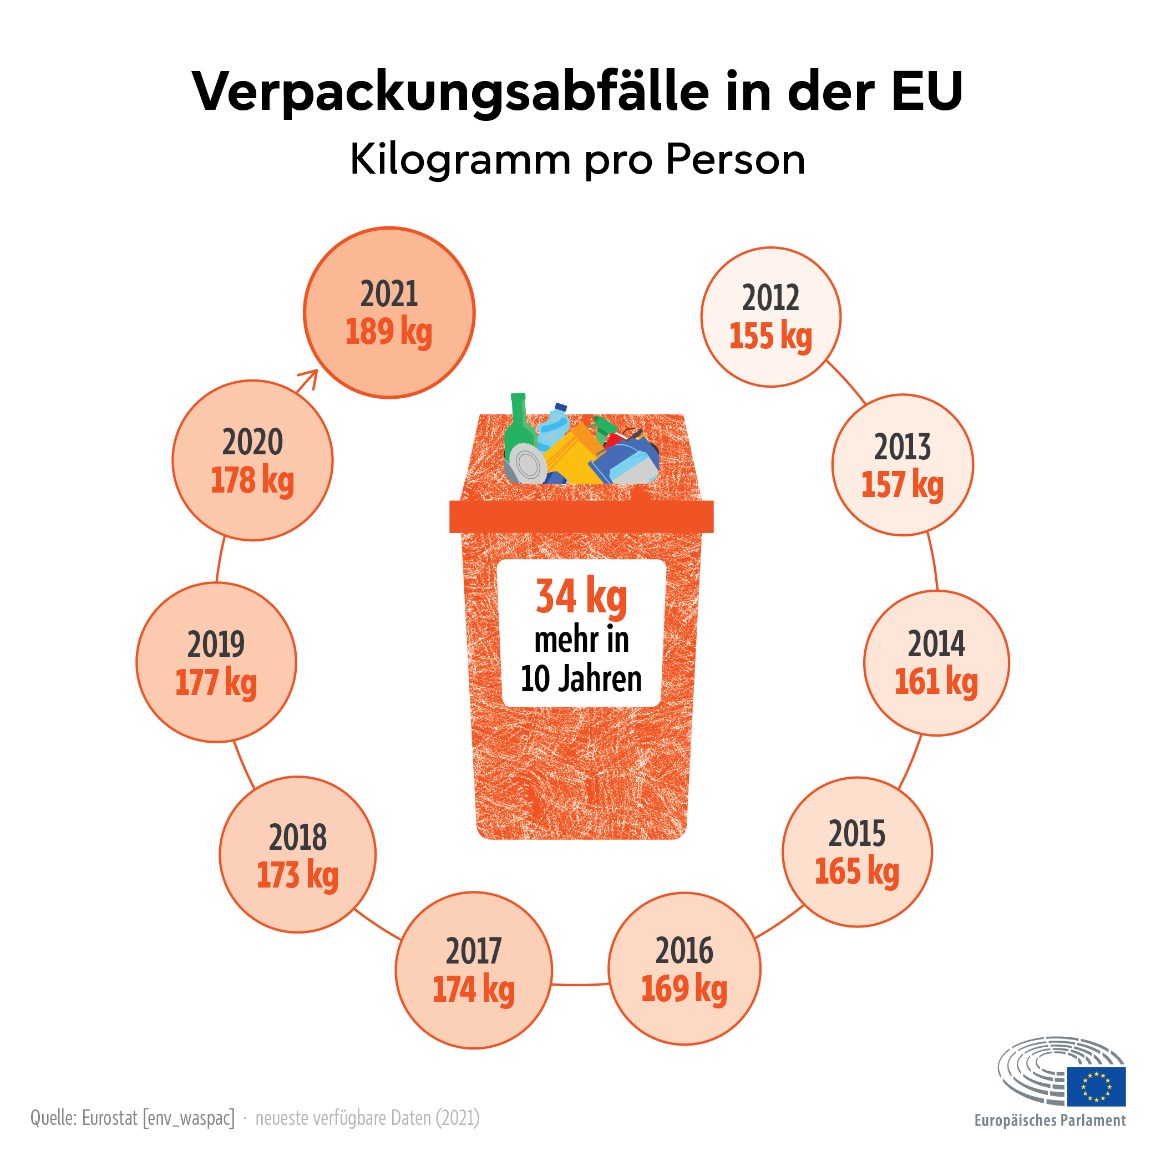 Quelle: Eurostat